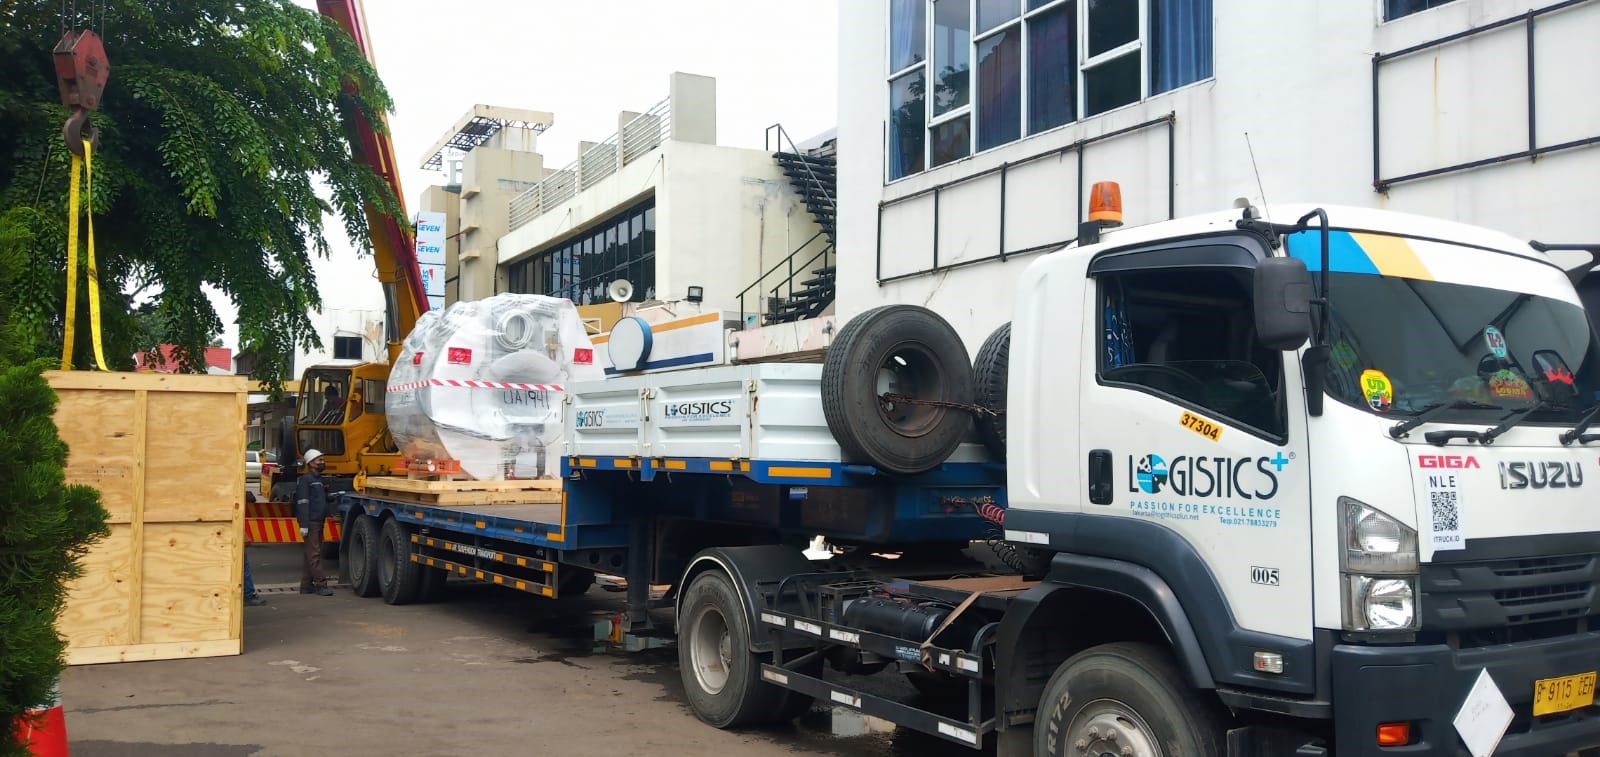 Logistics Plus Indonesia Continues to Deliver MRI Equipment